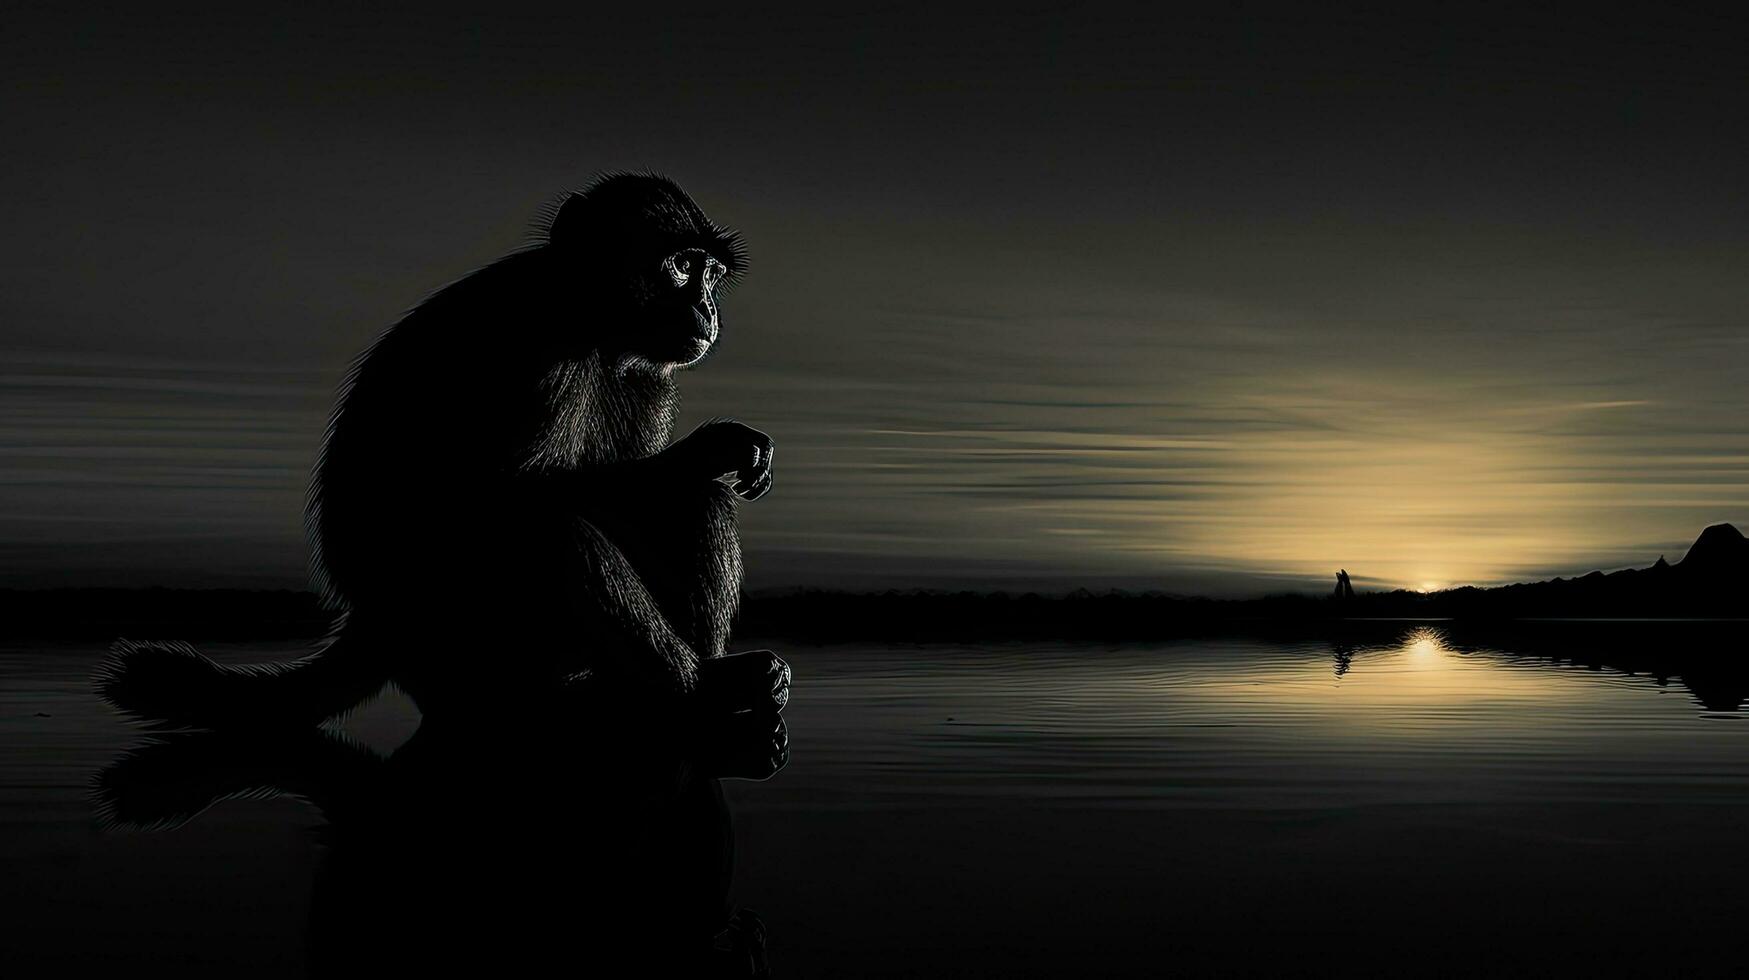 zwart en wit silhouet van een aap Bij zonsondergang foto